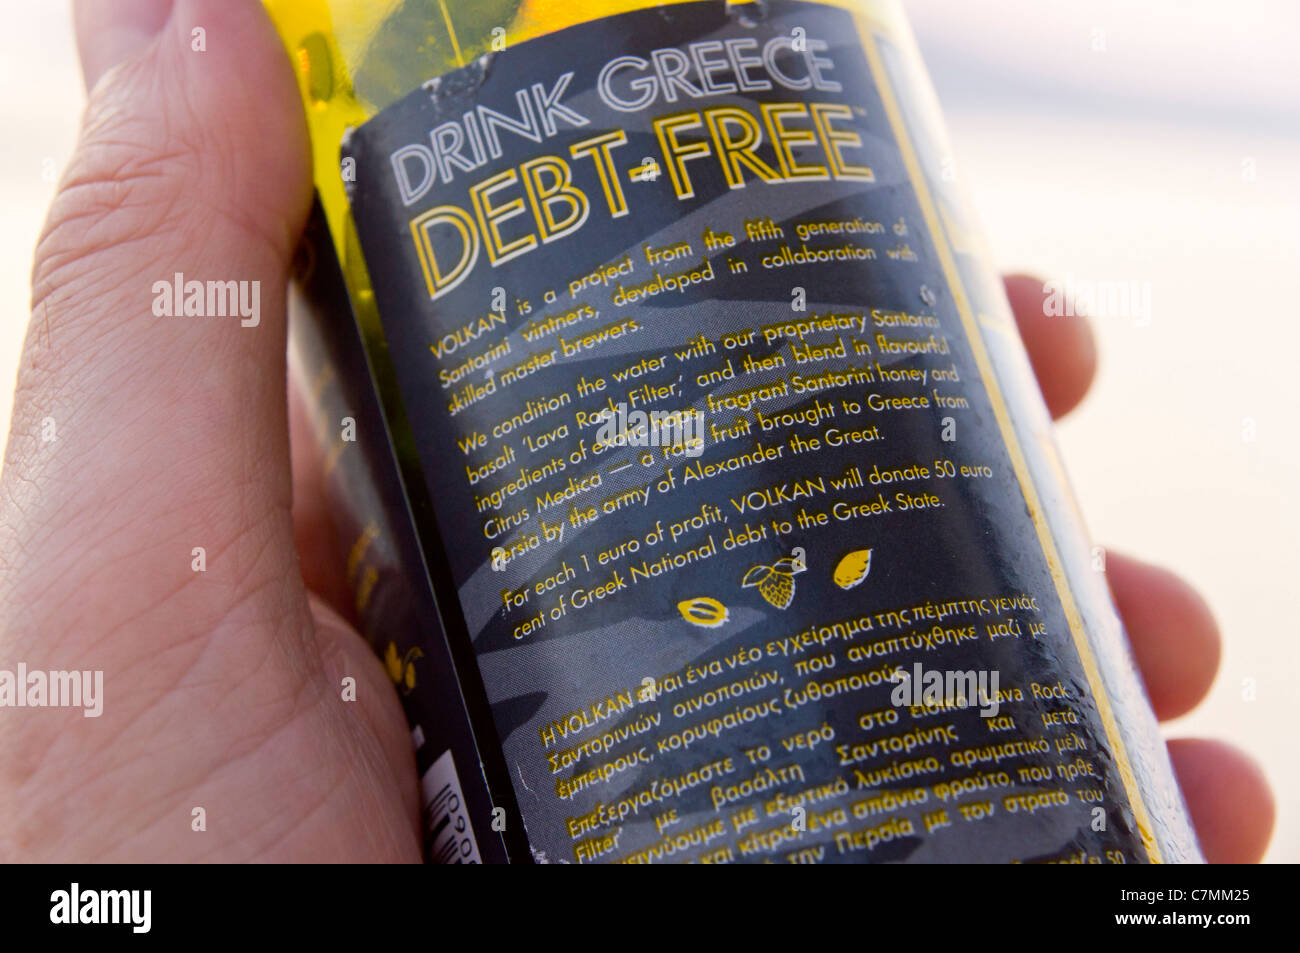 Santorini 2011 - lokale Volkan Lagerbier - Brauerei spendet 50 Euro Cent zahlen aus griechischen Staatsverschuldung von jedem 1 Euro Gewinn gemacht. Stockfoto